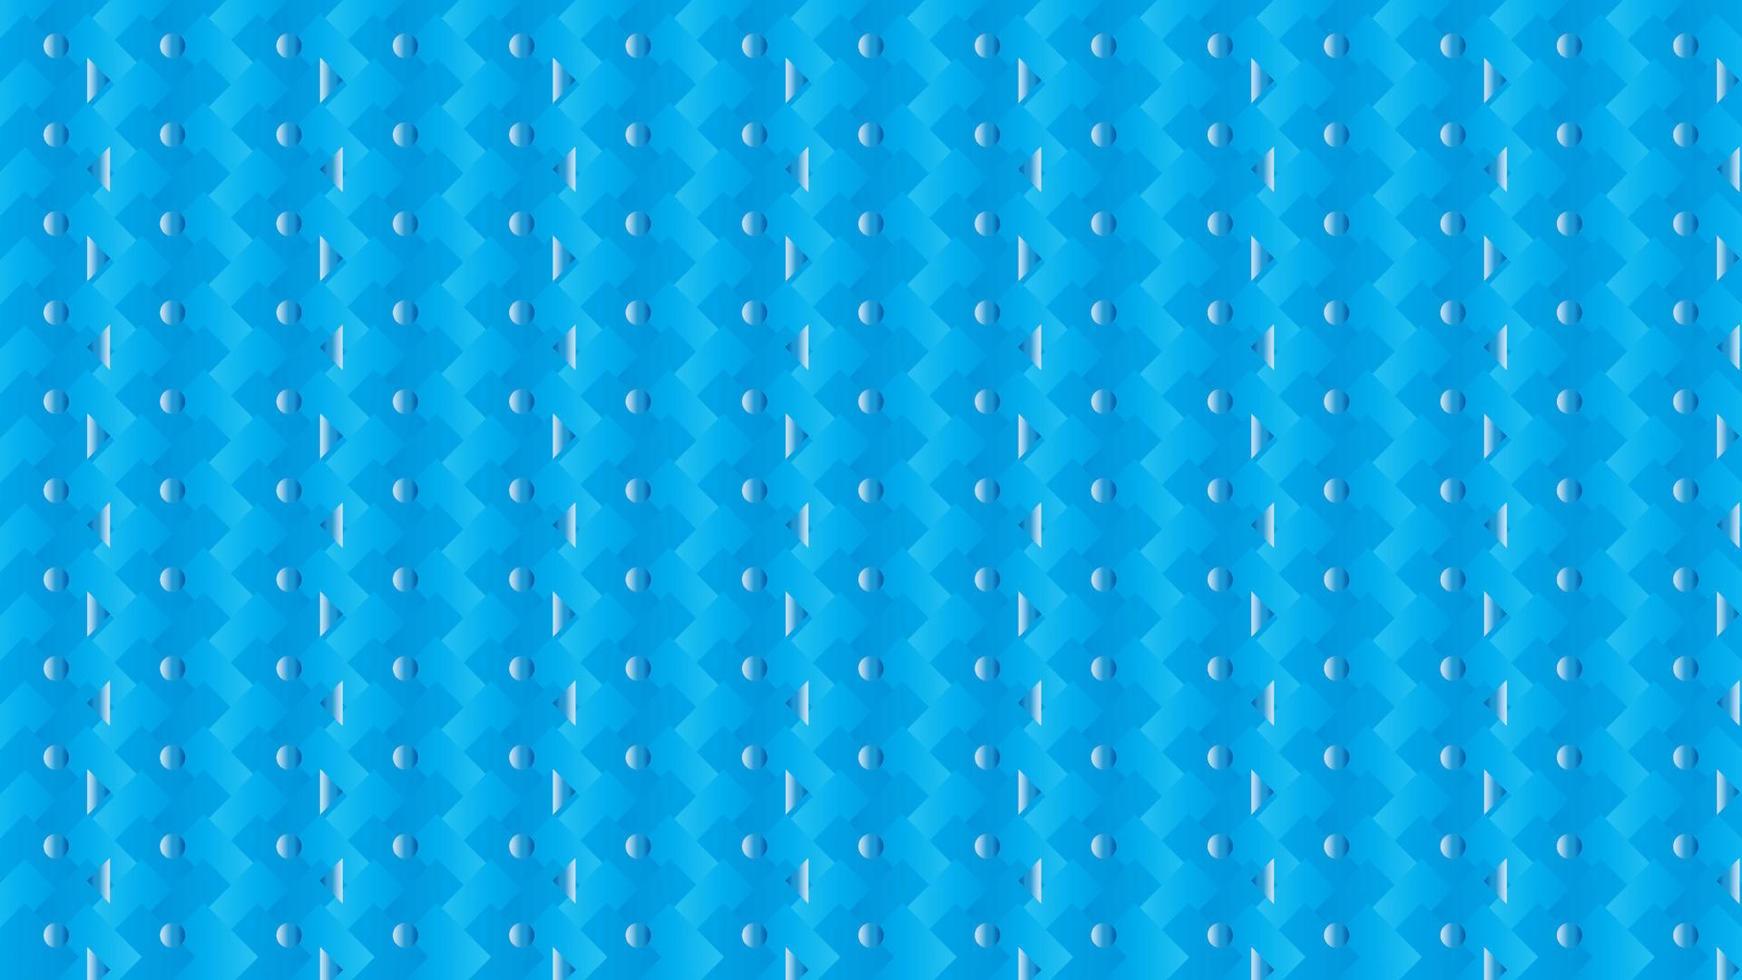 abstrakter Hintergrund aus kleinen Punkten und Dreieck auf blauem Hintergrund, blauer Hintergrund mit Punkten und Dreiecksmuster vektor